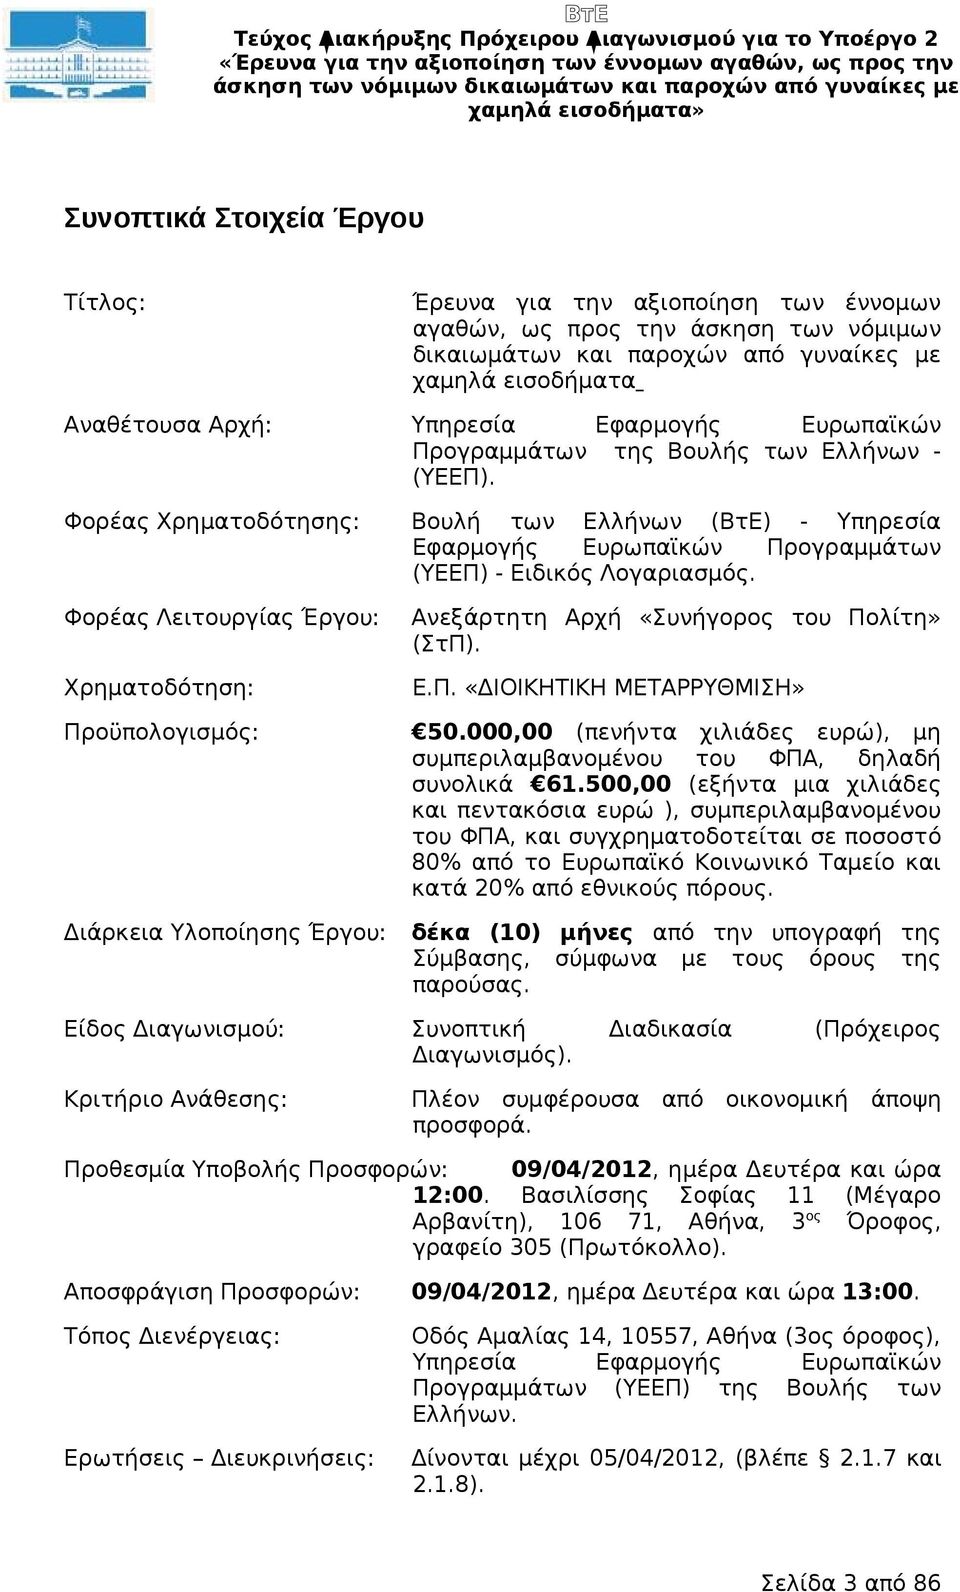 Φορέας Χρηματοδότησης: Φορέας Λειτουργίας Έργου: Χρηματοδότηση: Προϋπολογισμός: Διάρκεια Υλοποίησης Έργου: Βουλή των Ελλήνων (ΒτΕ) - Υπηρεσία Εφαρμογής Ευρωπαϊκών Προγραμμάτων (ΥΕΕΠ) - Ειδικός